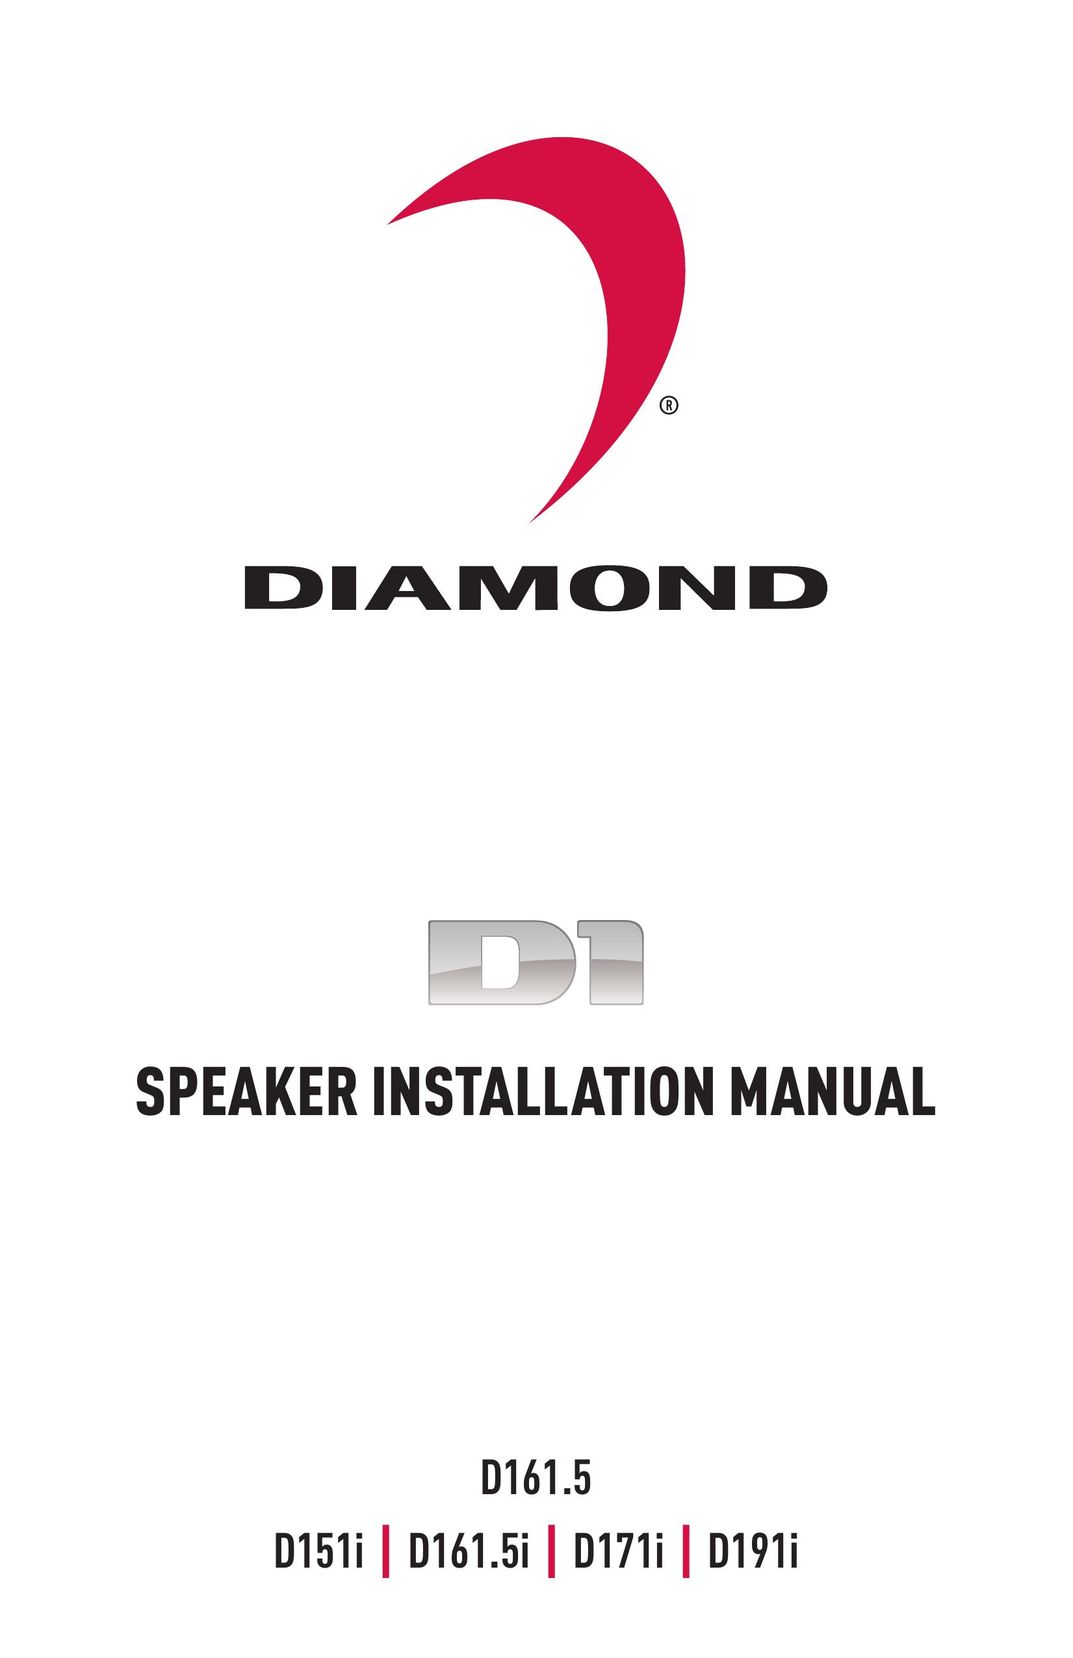 Diamond Audio Technology D161.5I Speaker User Manual